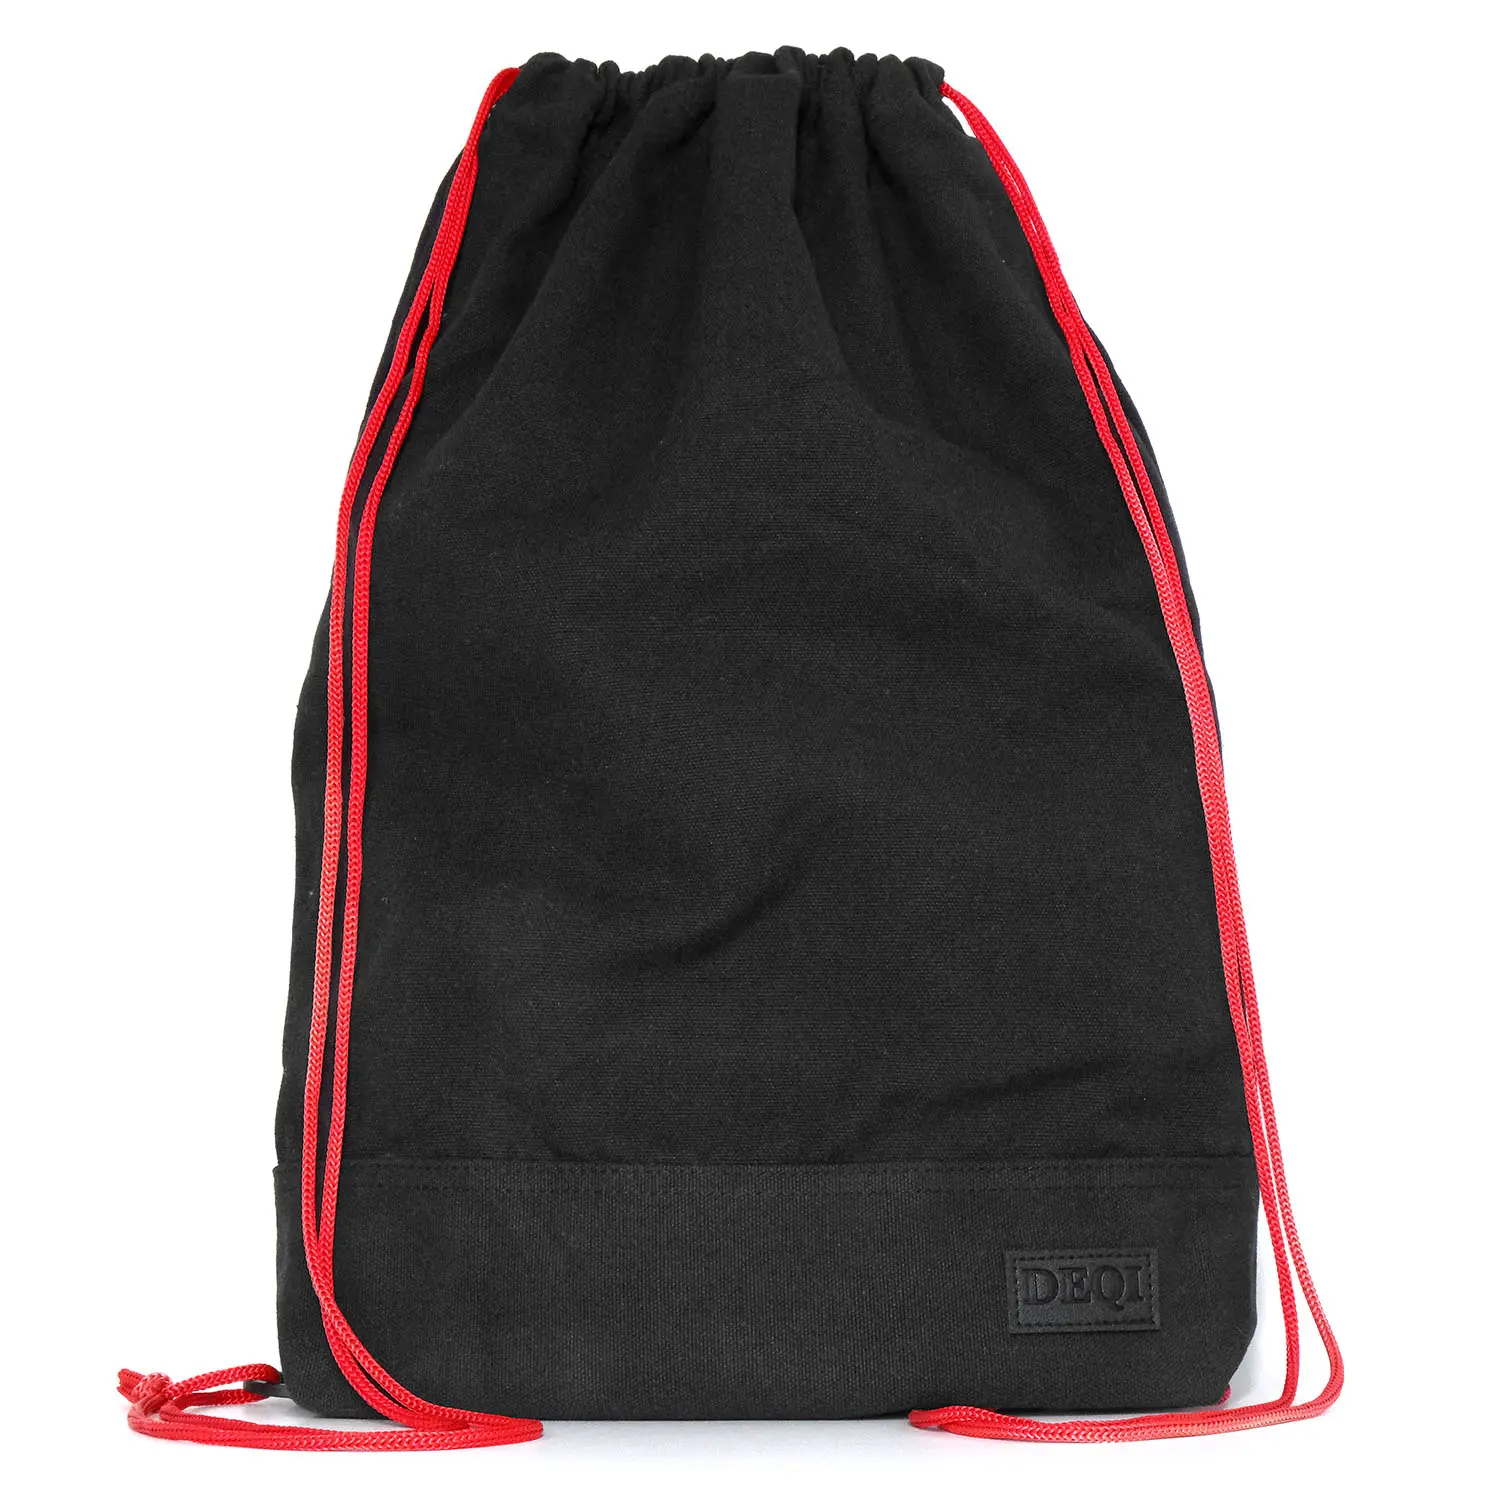 DEQI Haversacks экологически чистый 100% переработанный органический хлопок шнурок сумка для спорта на открытом воздухе натуральный холст шнурок рюкзак